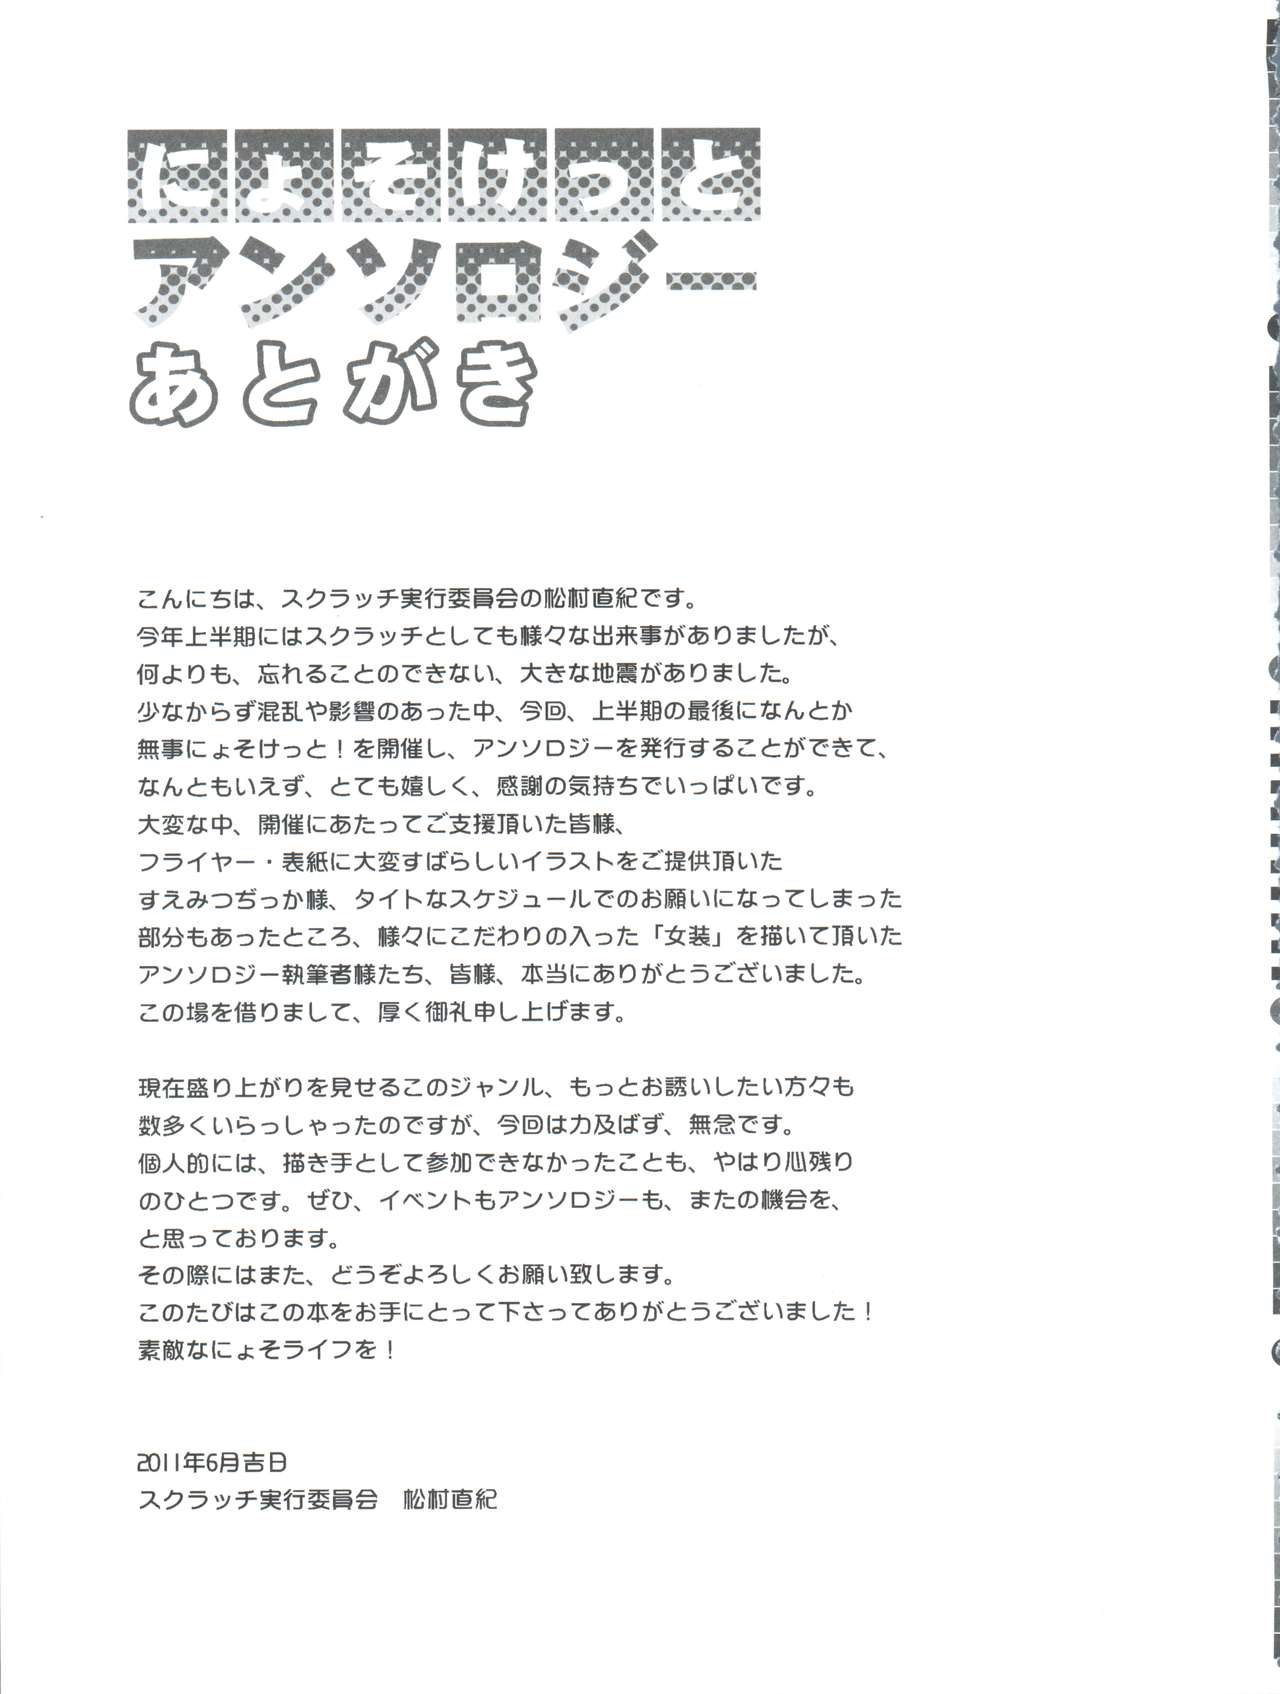 (Nyosoket!) [Scratch Jikkou Iinkai (Various)] Nyosoket Anthology page 37 full